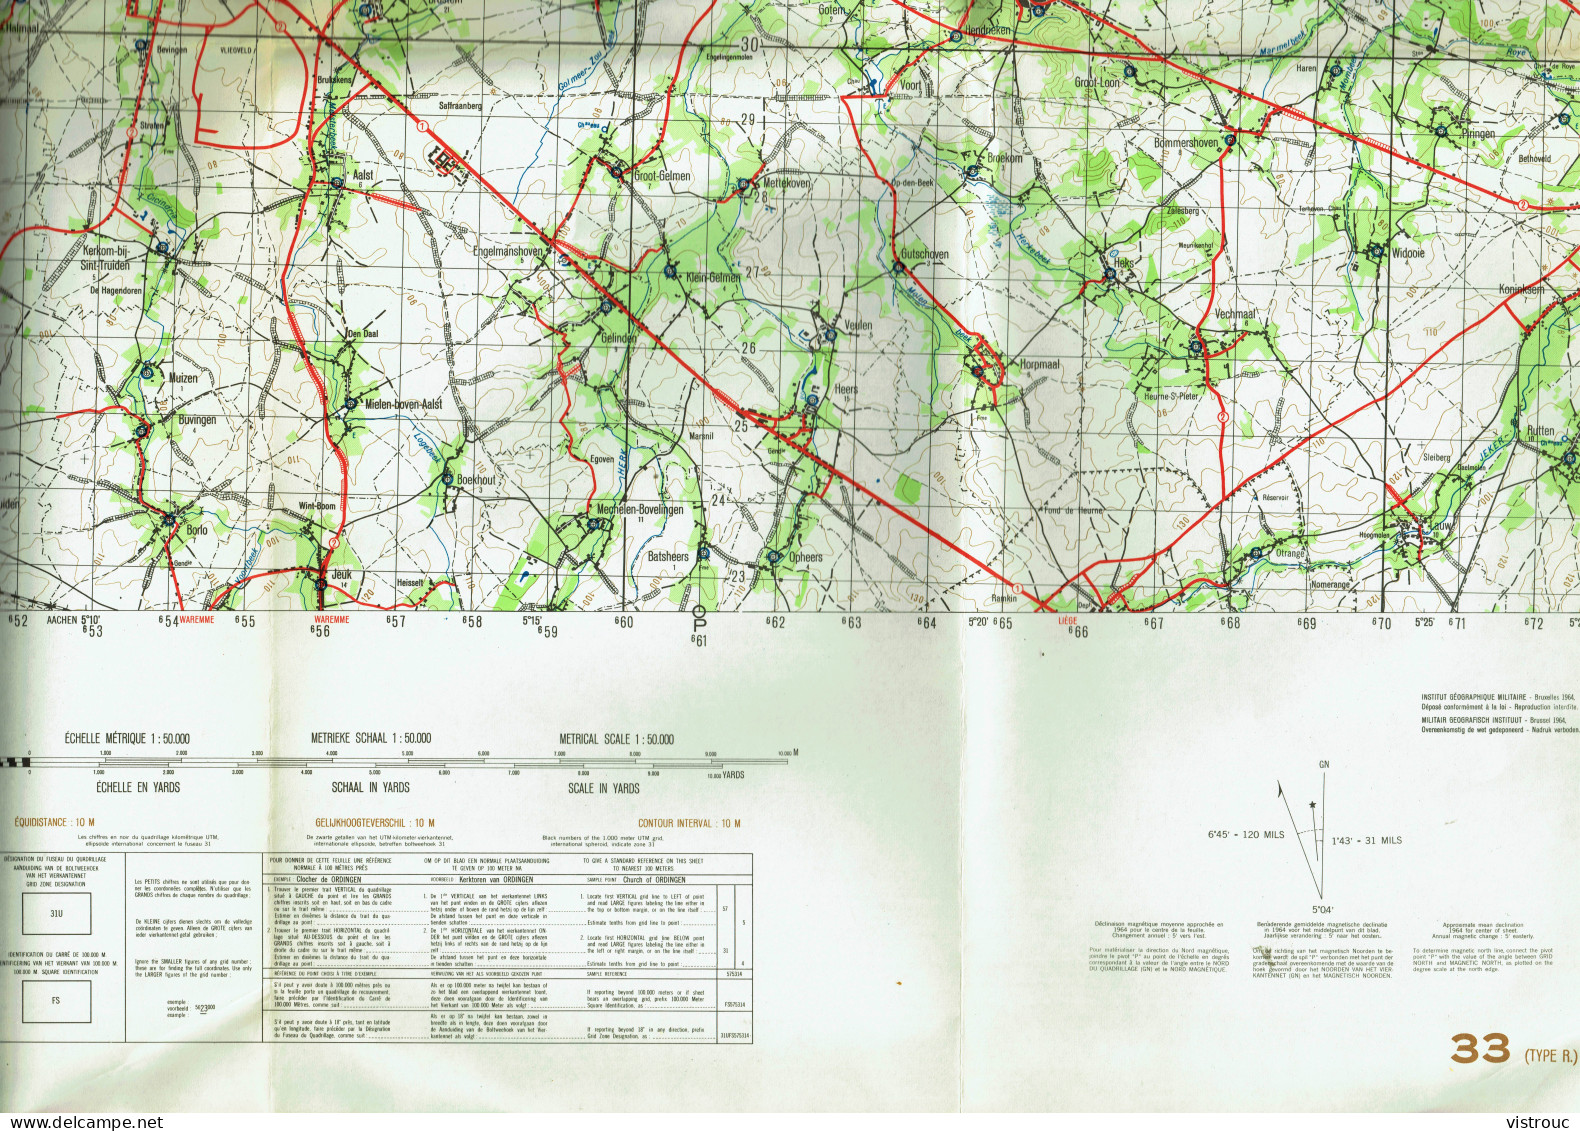 Institut Géographique Militaire Be - "SAINT-TROND - SINT-TRUIDEN" - N° 33 - Edition: 1964 - Echelle 1/50.000 - Topographical Maps